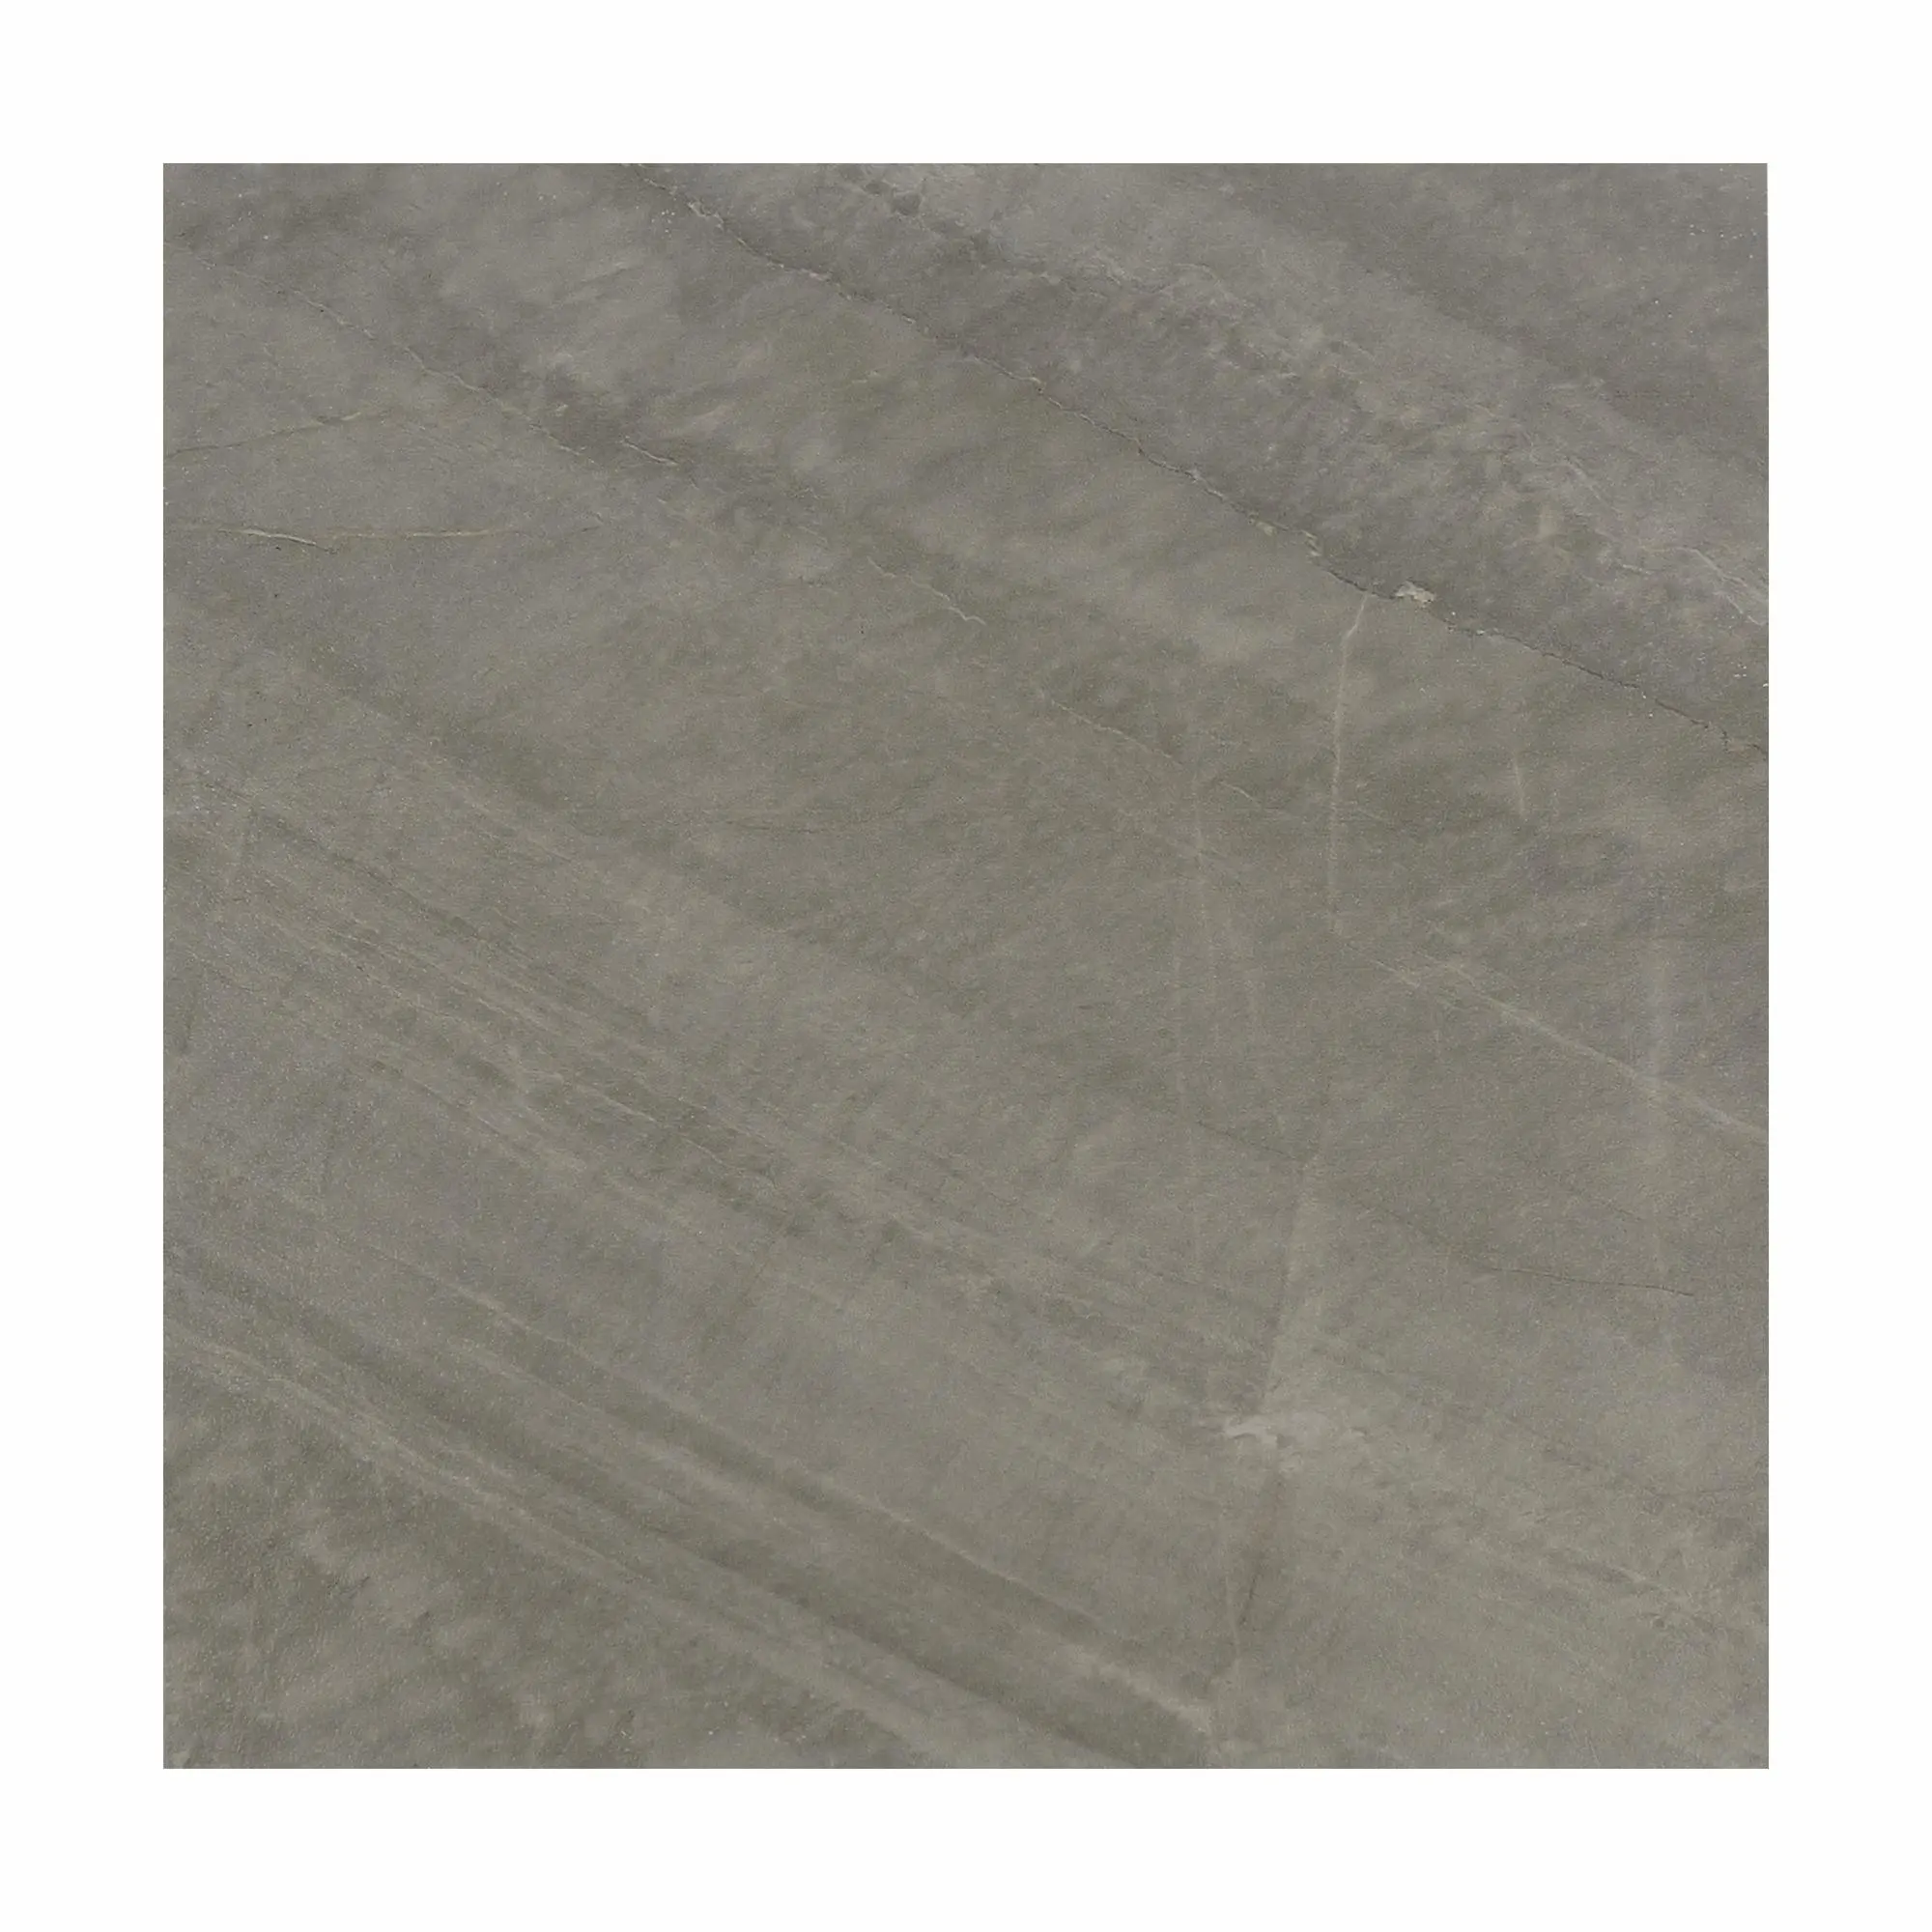 Bán buôn màu xám 30x30 cm bề mặt mờ sàn gạch đá cẩm thạch mua gạch lát sàn gốm sứ gạch để bán